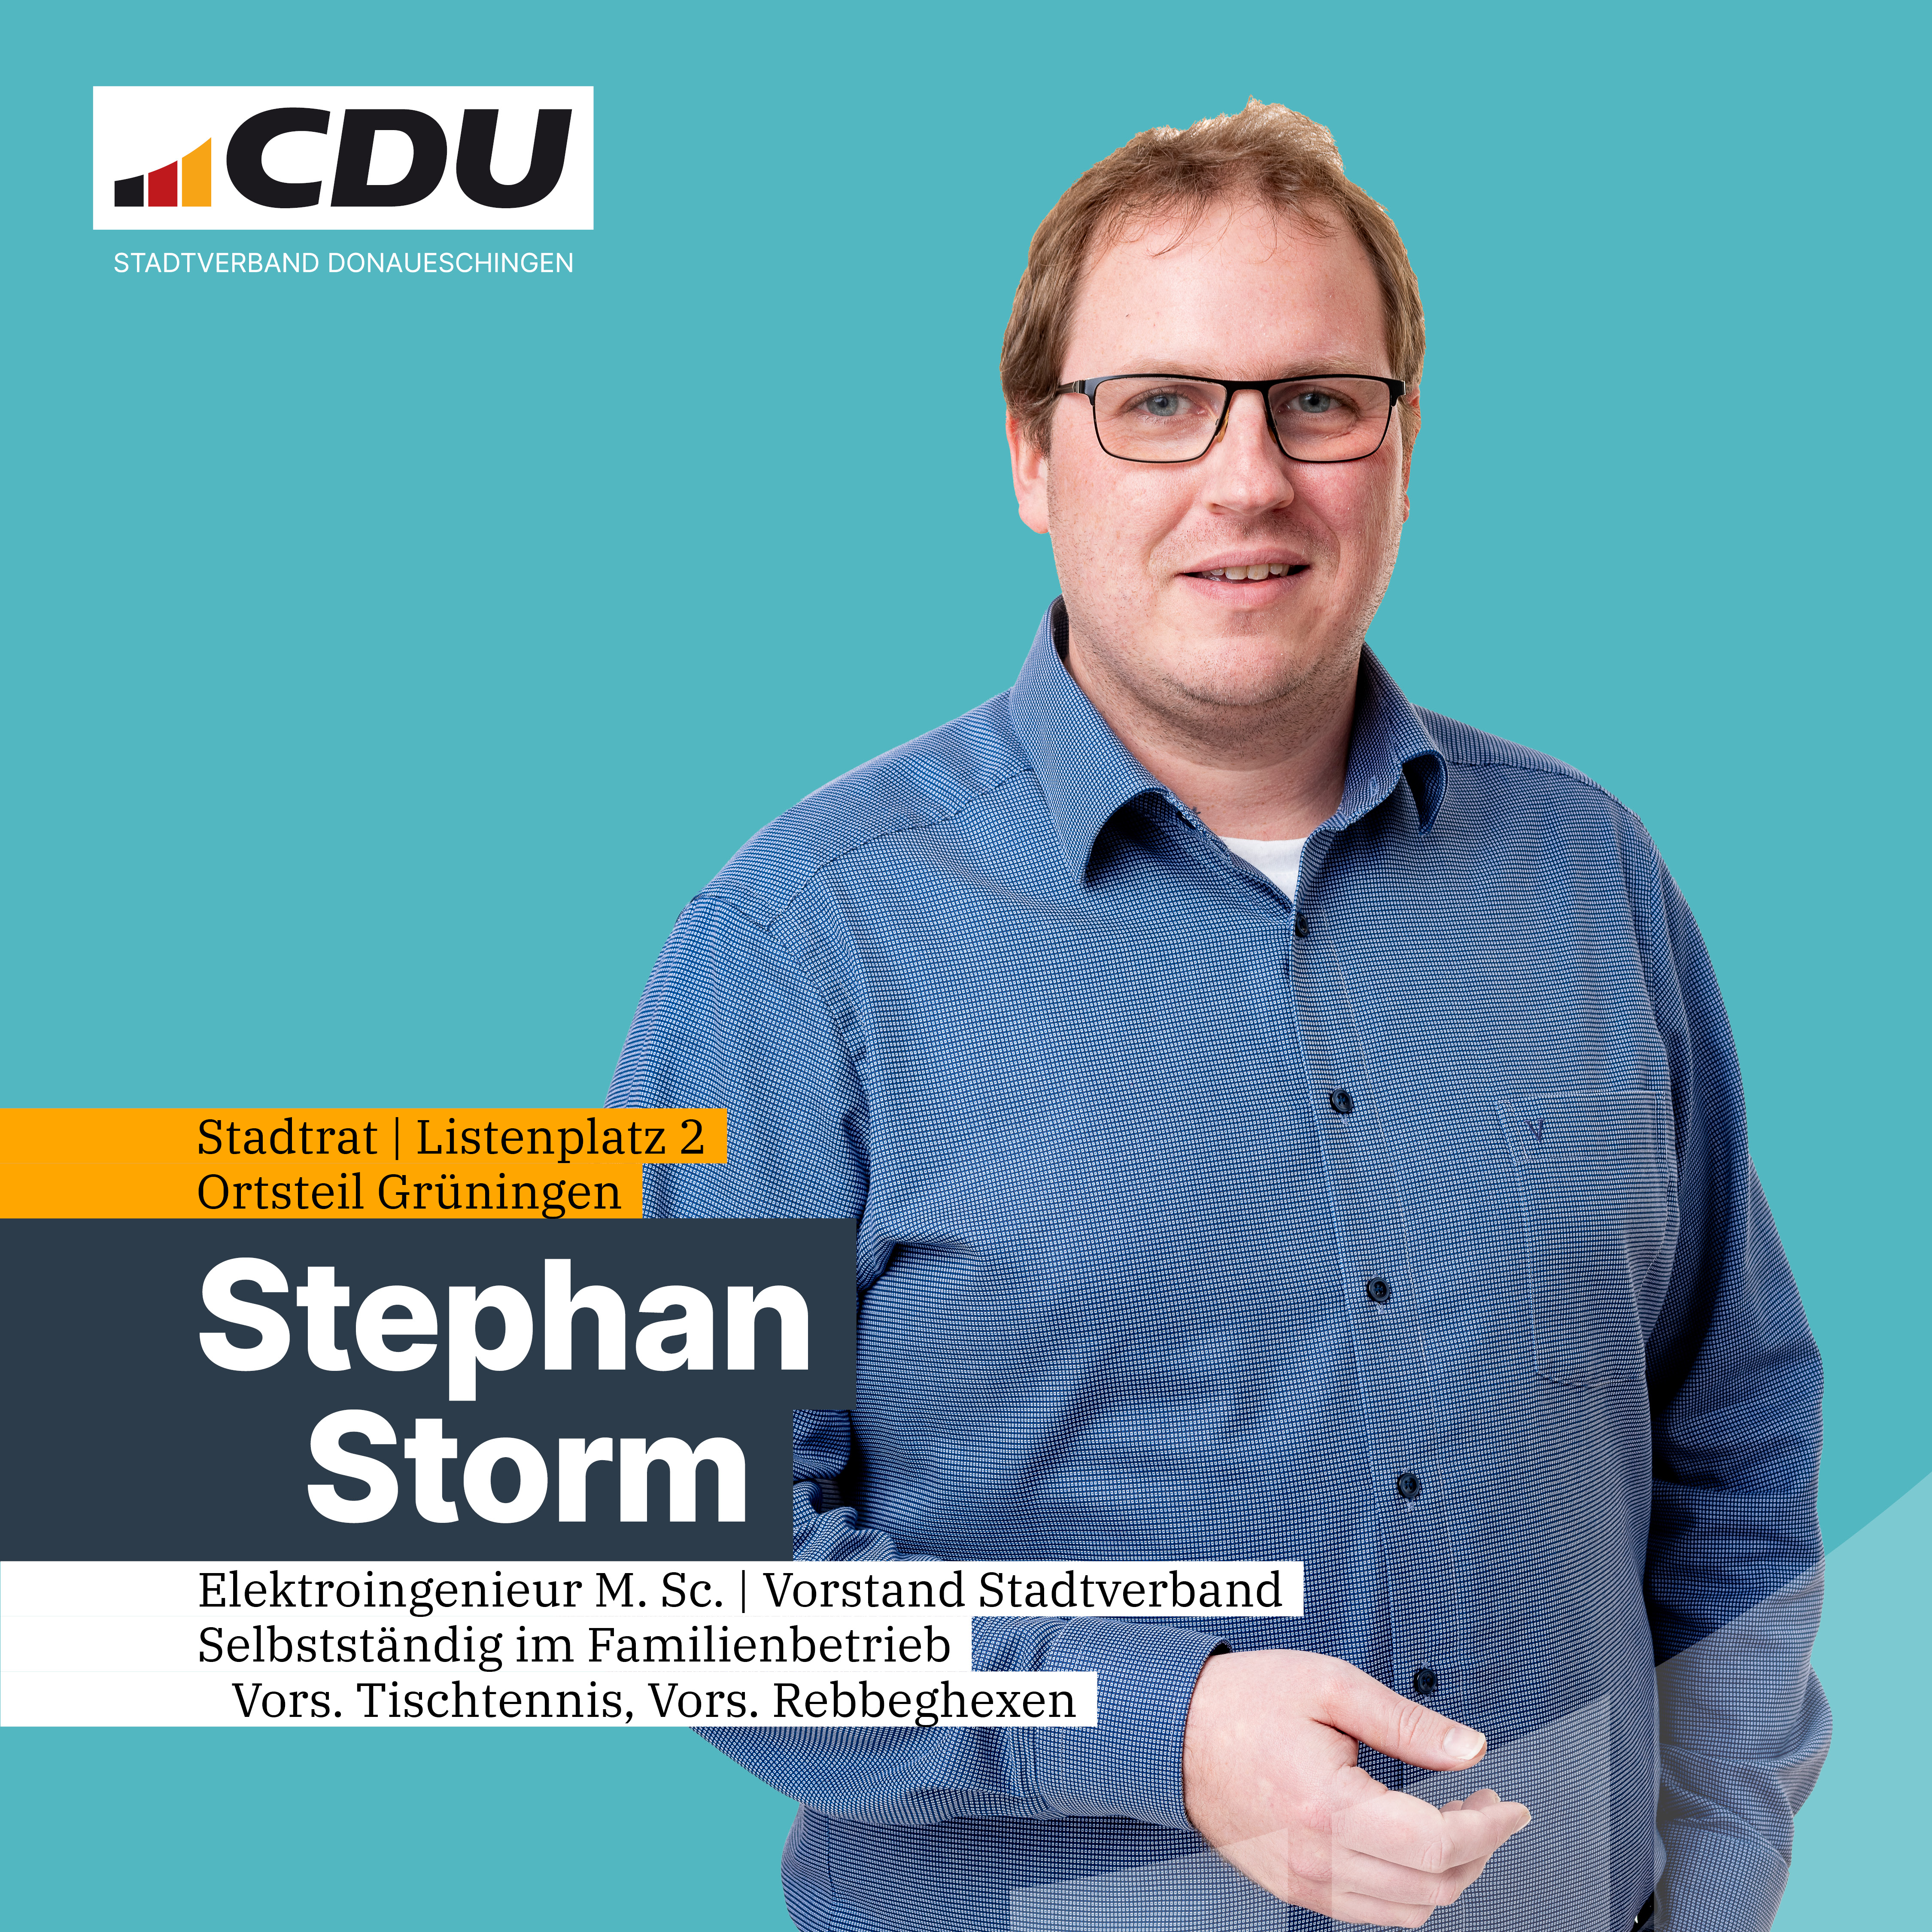  Stephan Storm